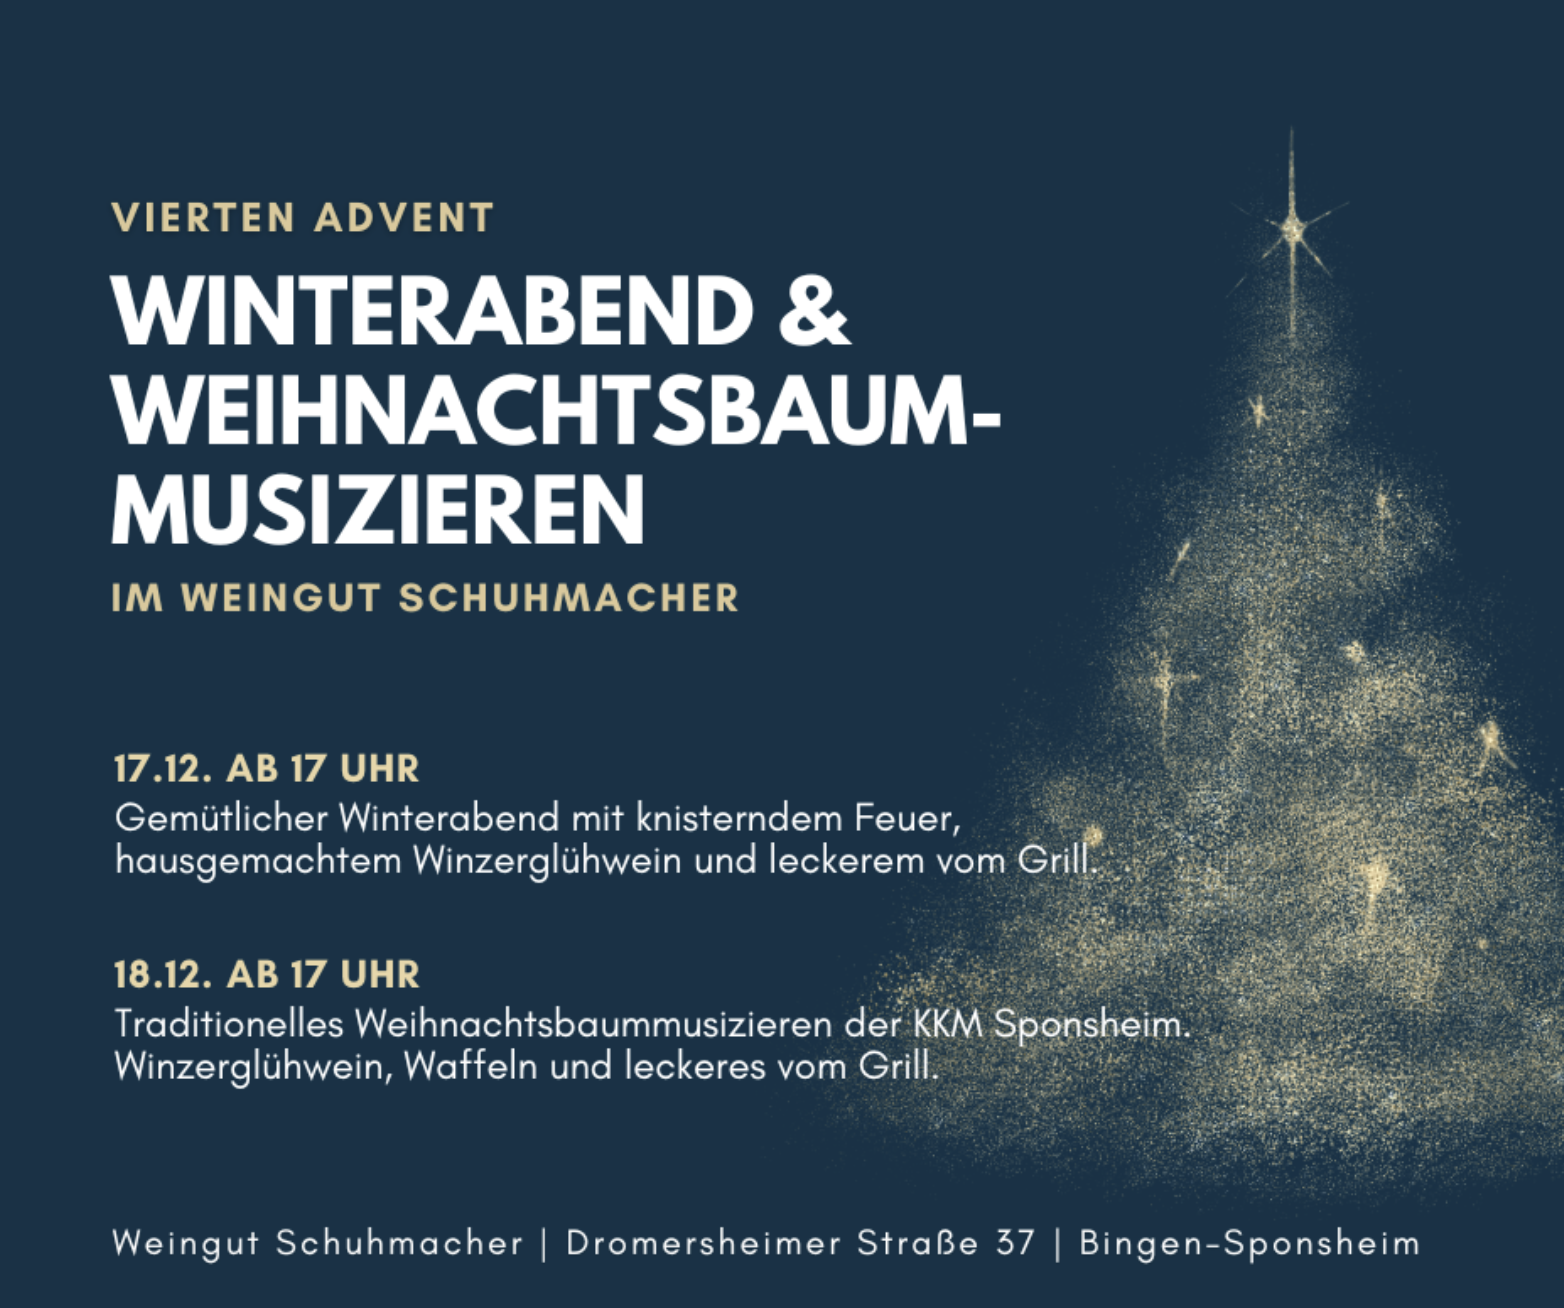 Vierter Advent (c) KKM-Bingen Sponsheim